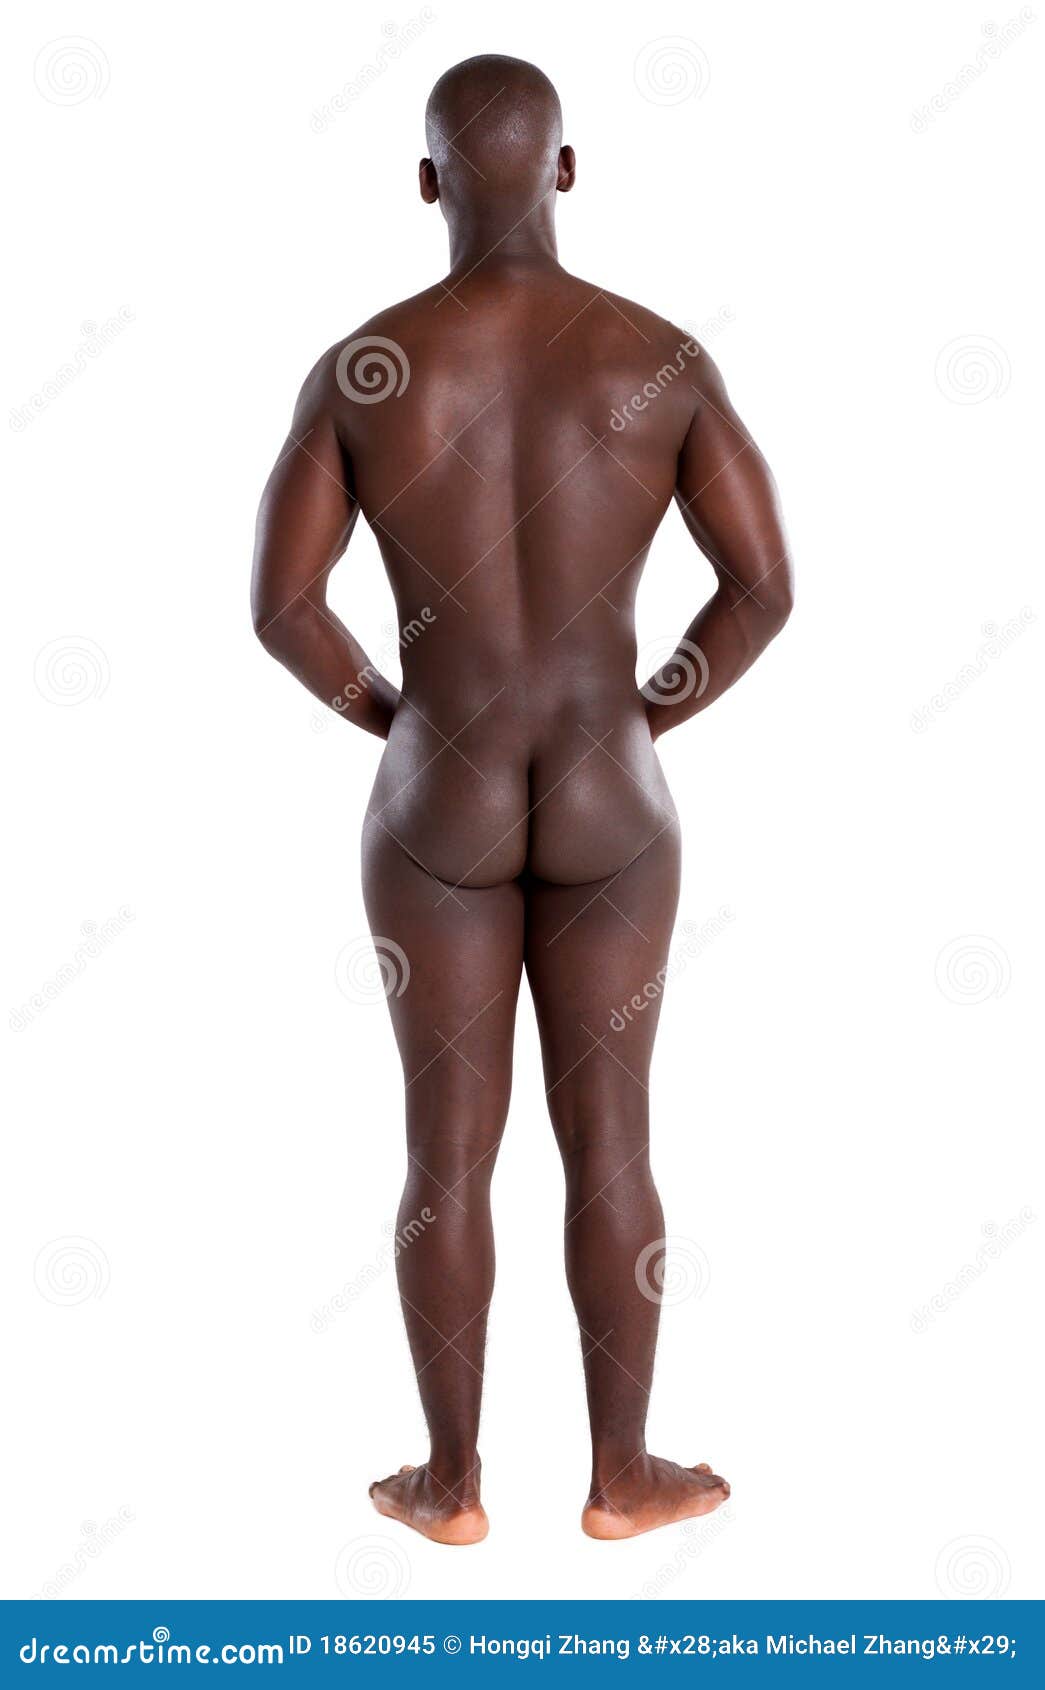 nude american african men